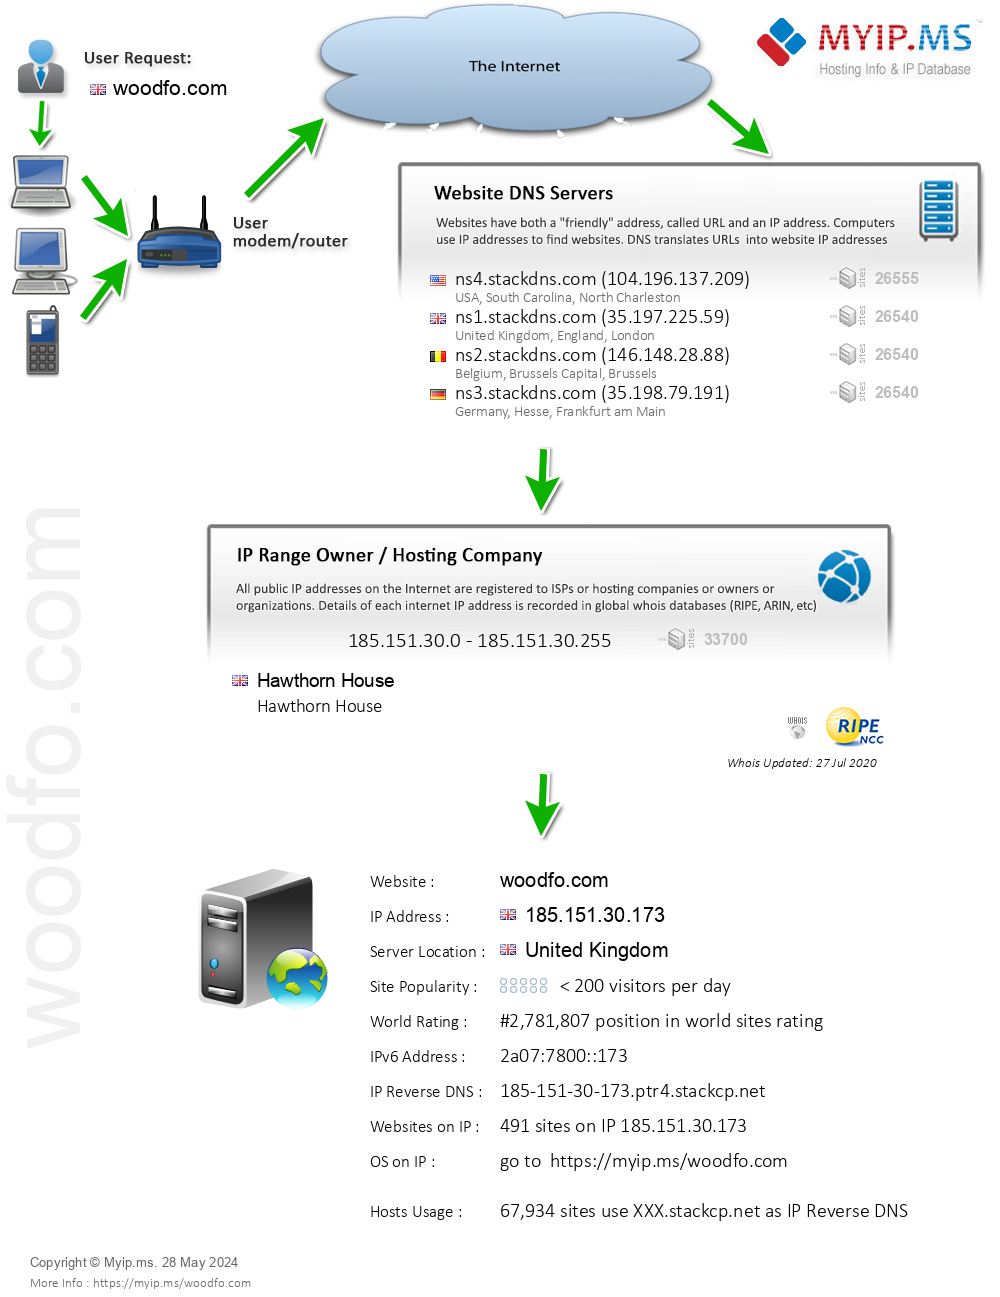 Woodfo.com - Website Hosting Visual IP Diagram